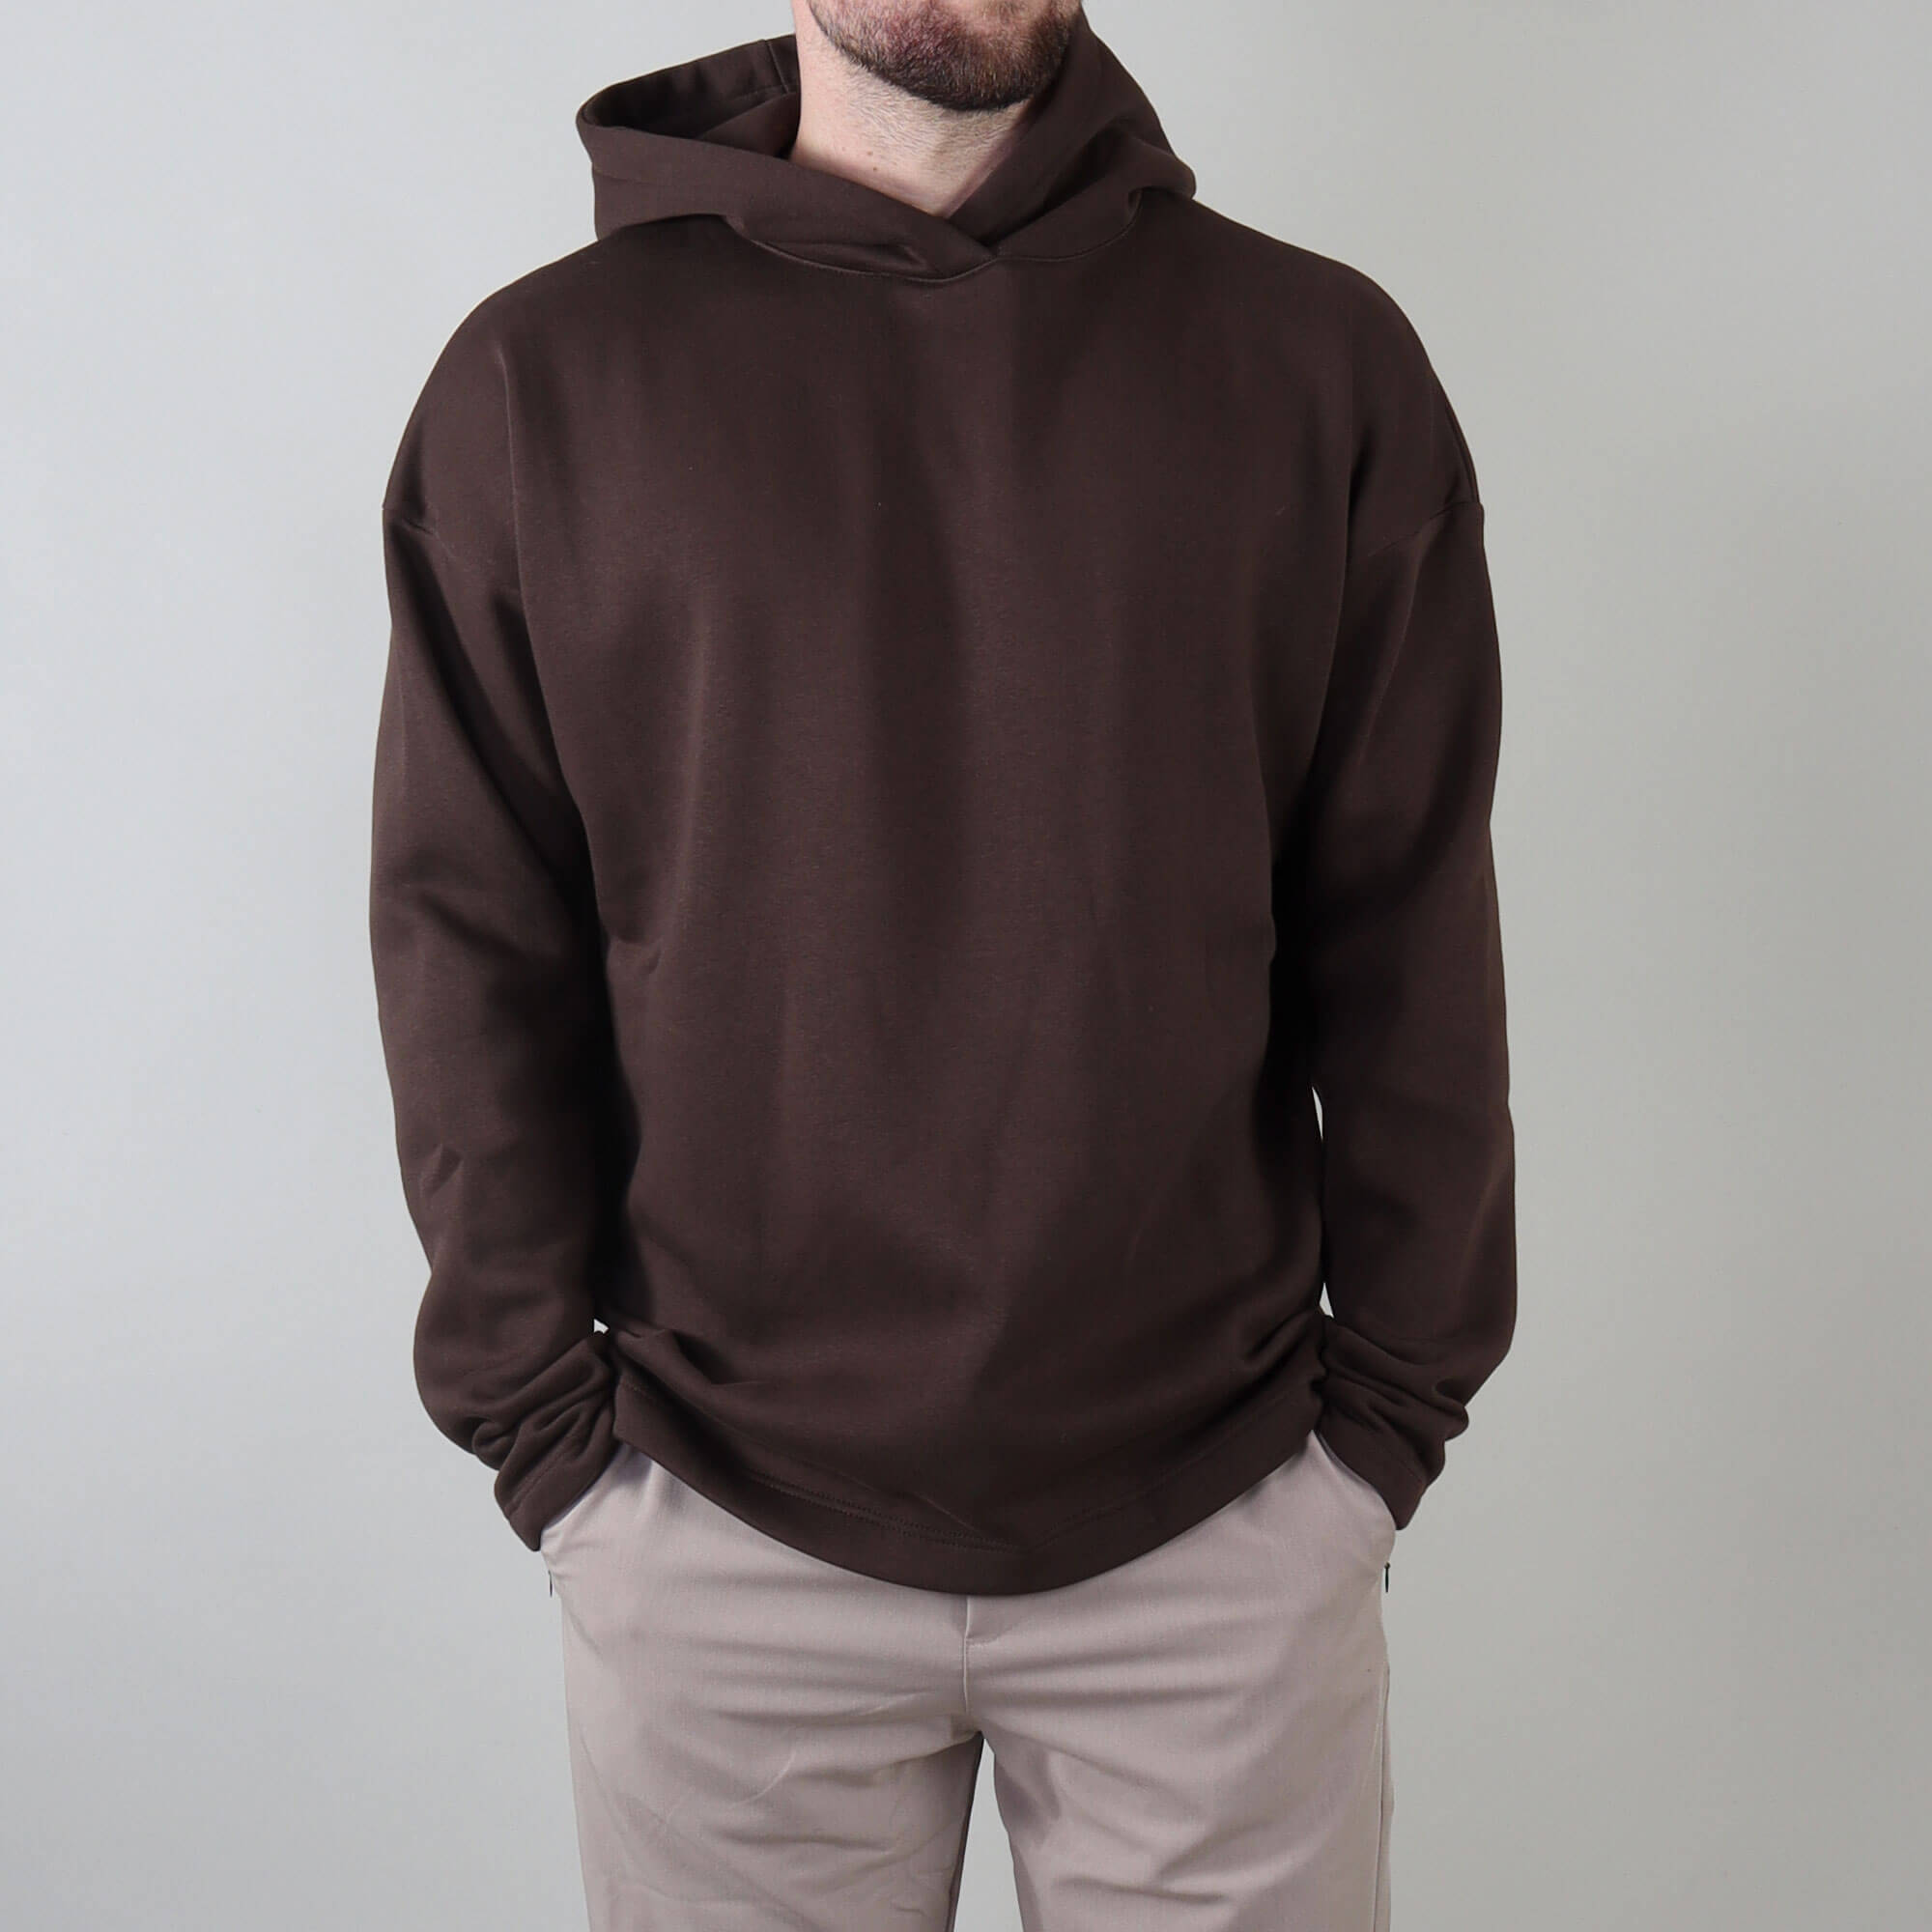 PRJCT hoodie brown